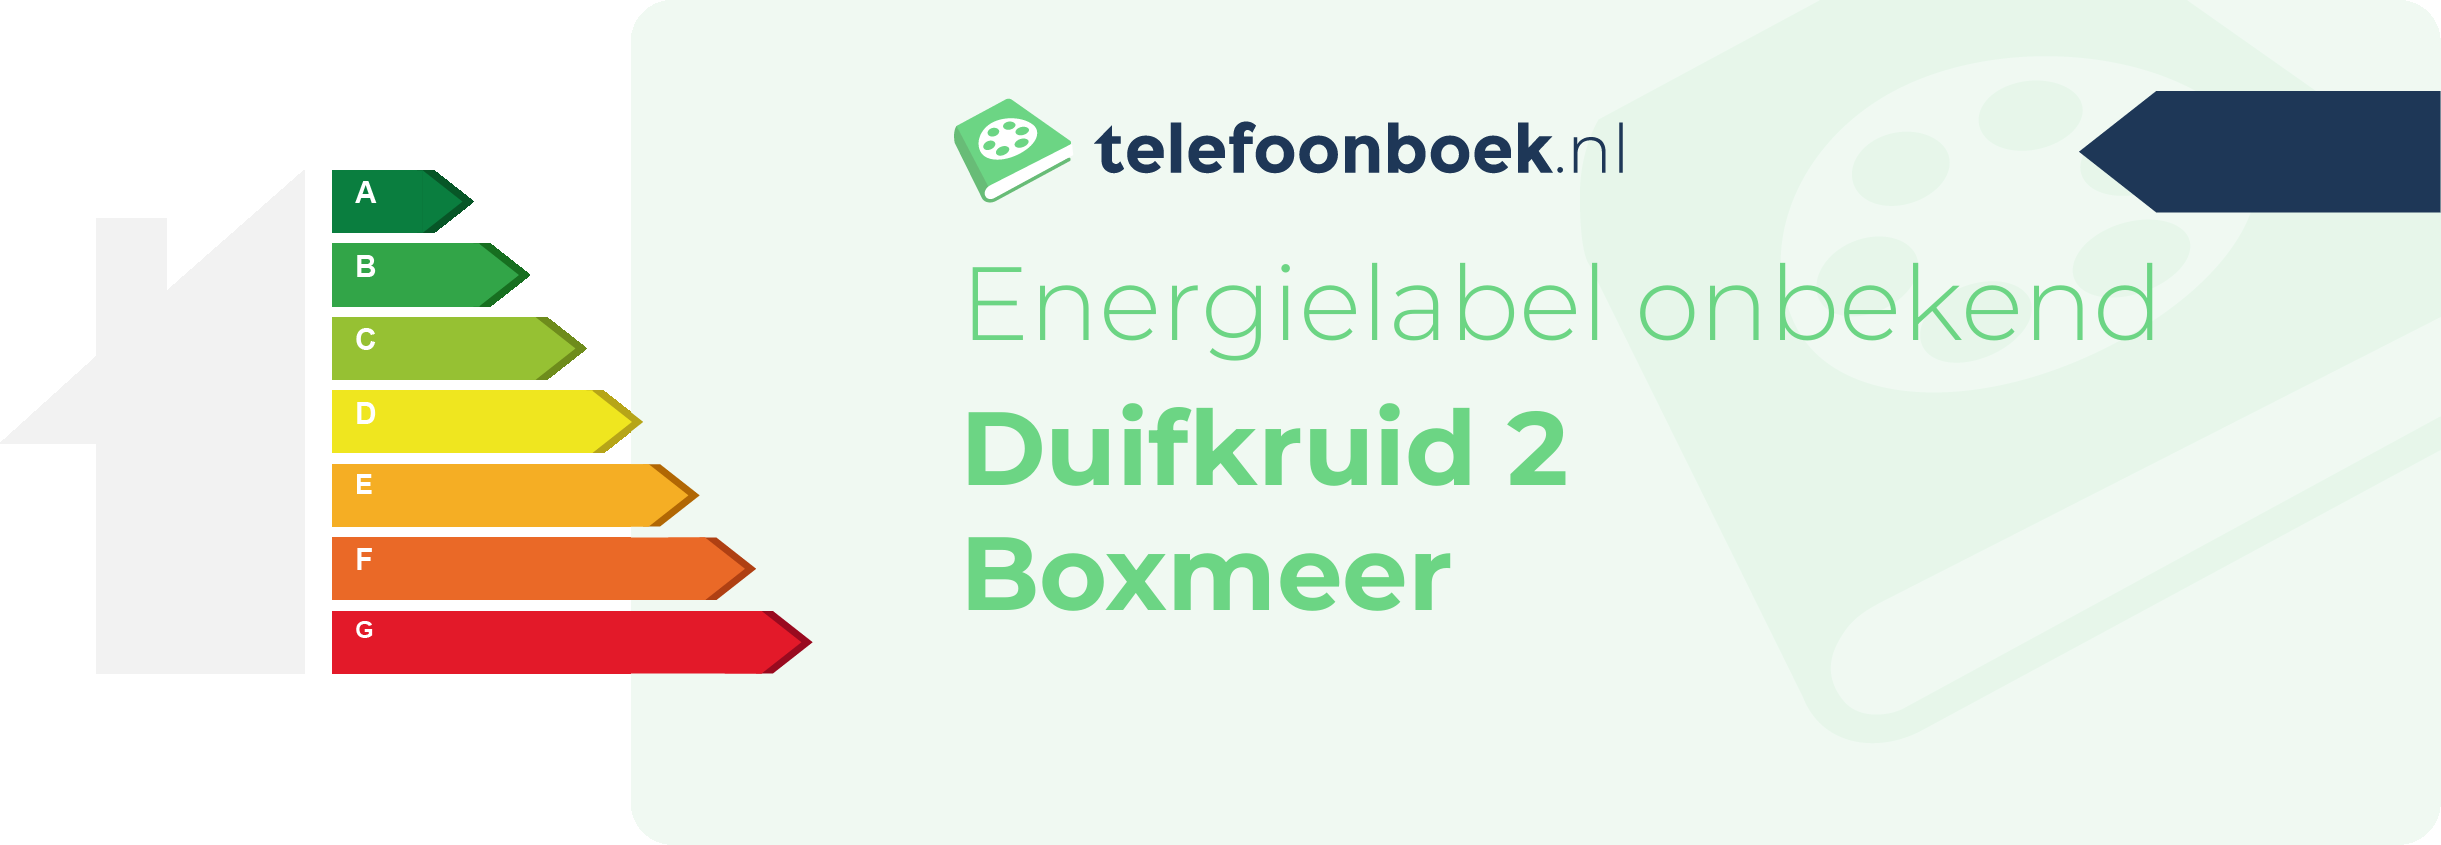 Energielabel Duifkruid 2 Boxmeer